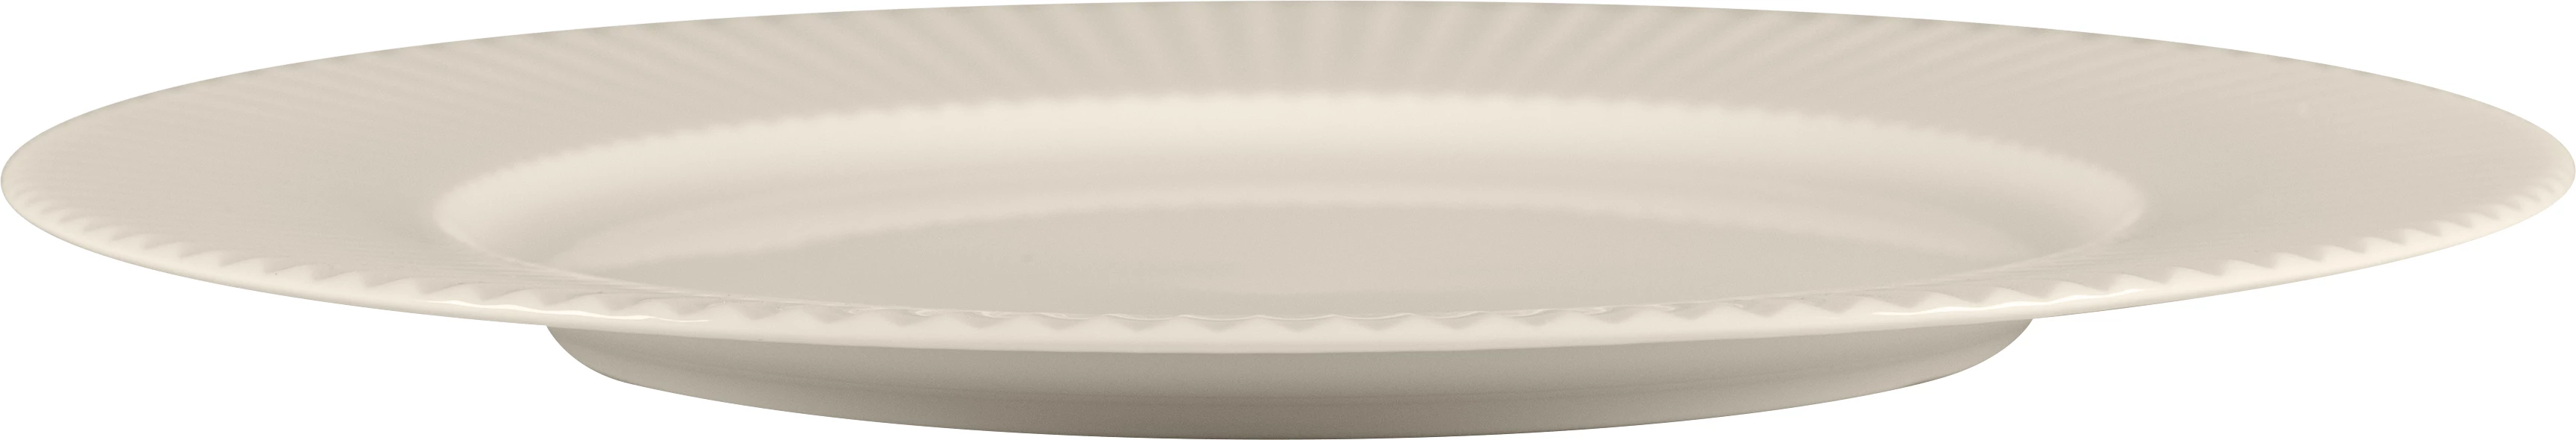 RAK Spectra flad tallerken med bred fane, ø26,9 cm